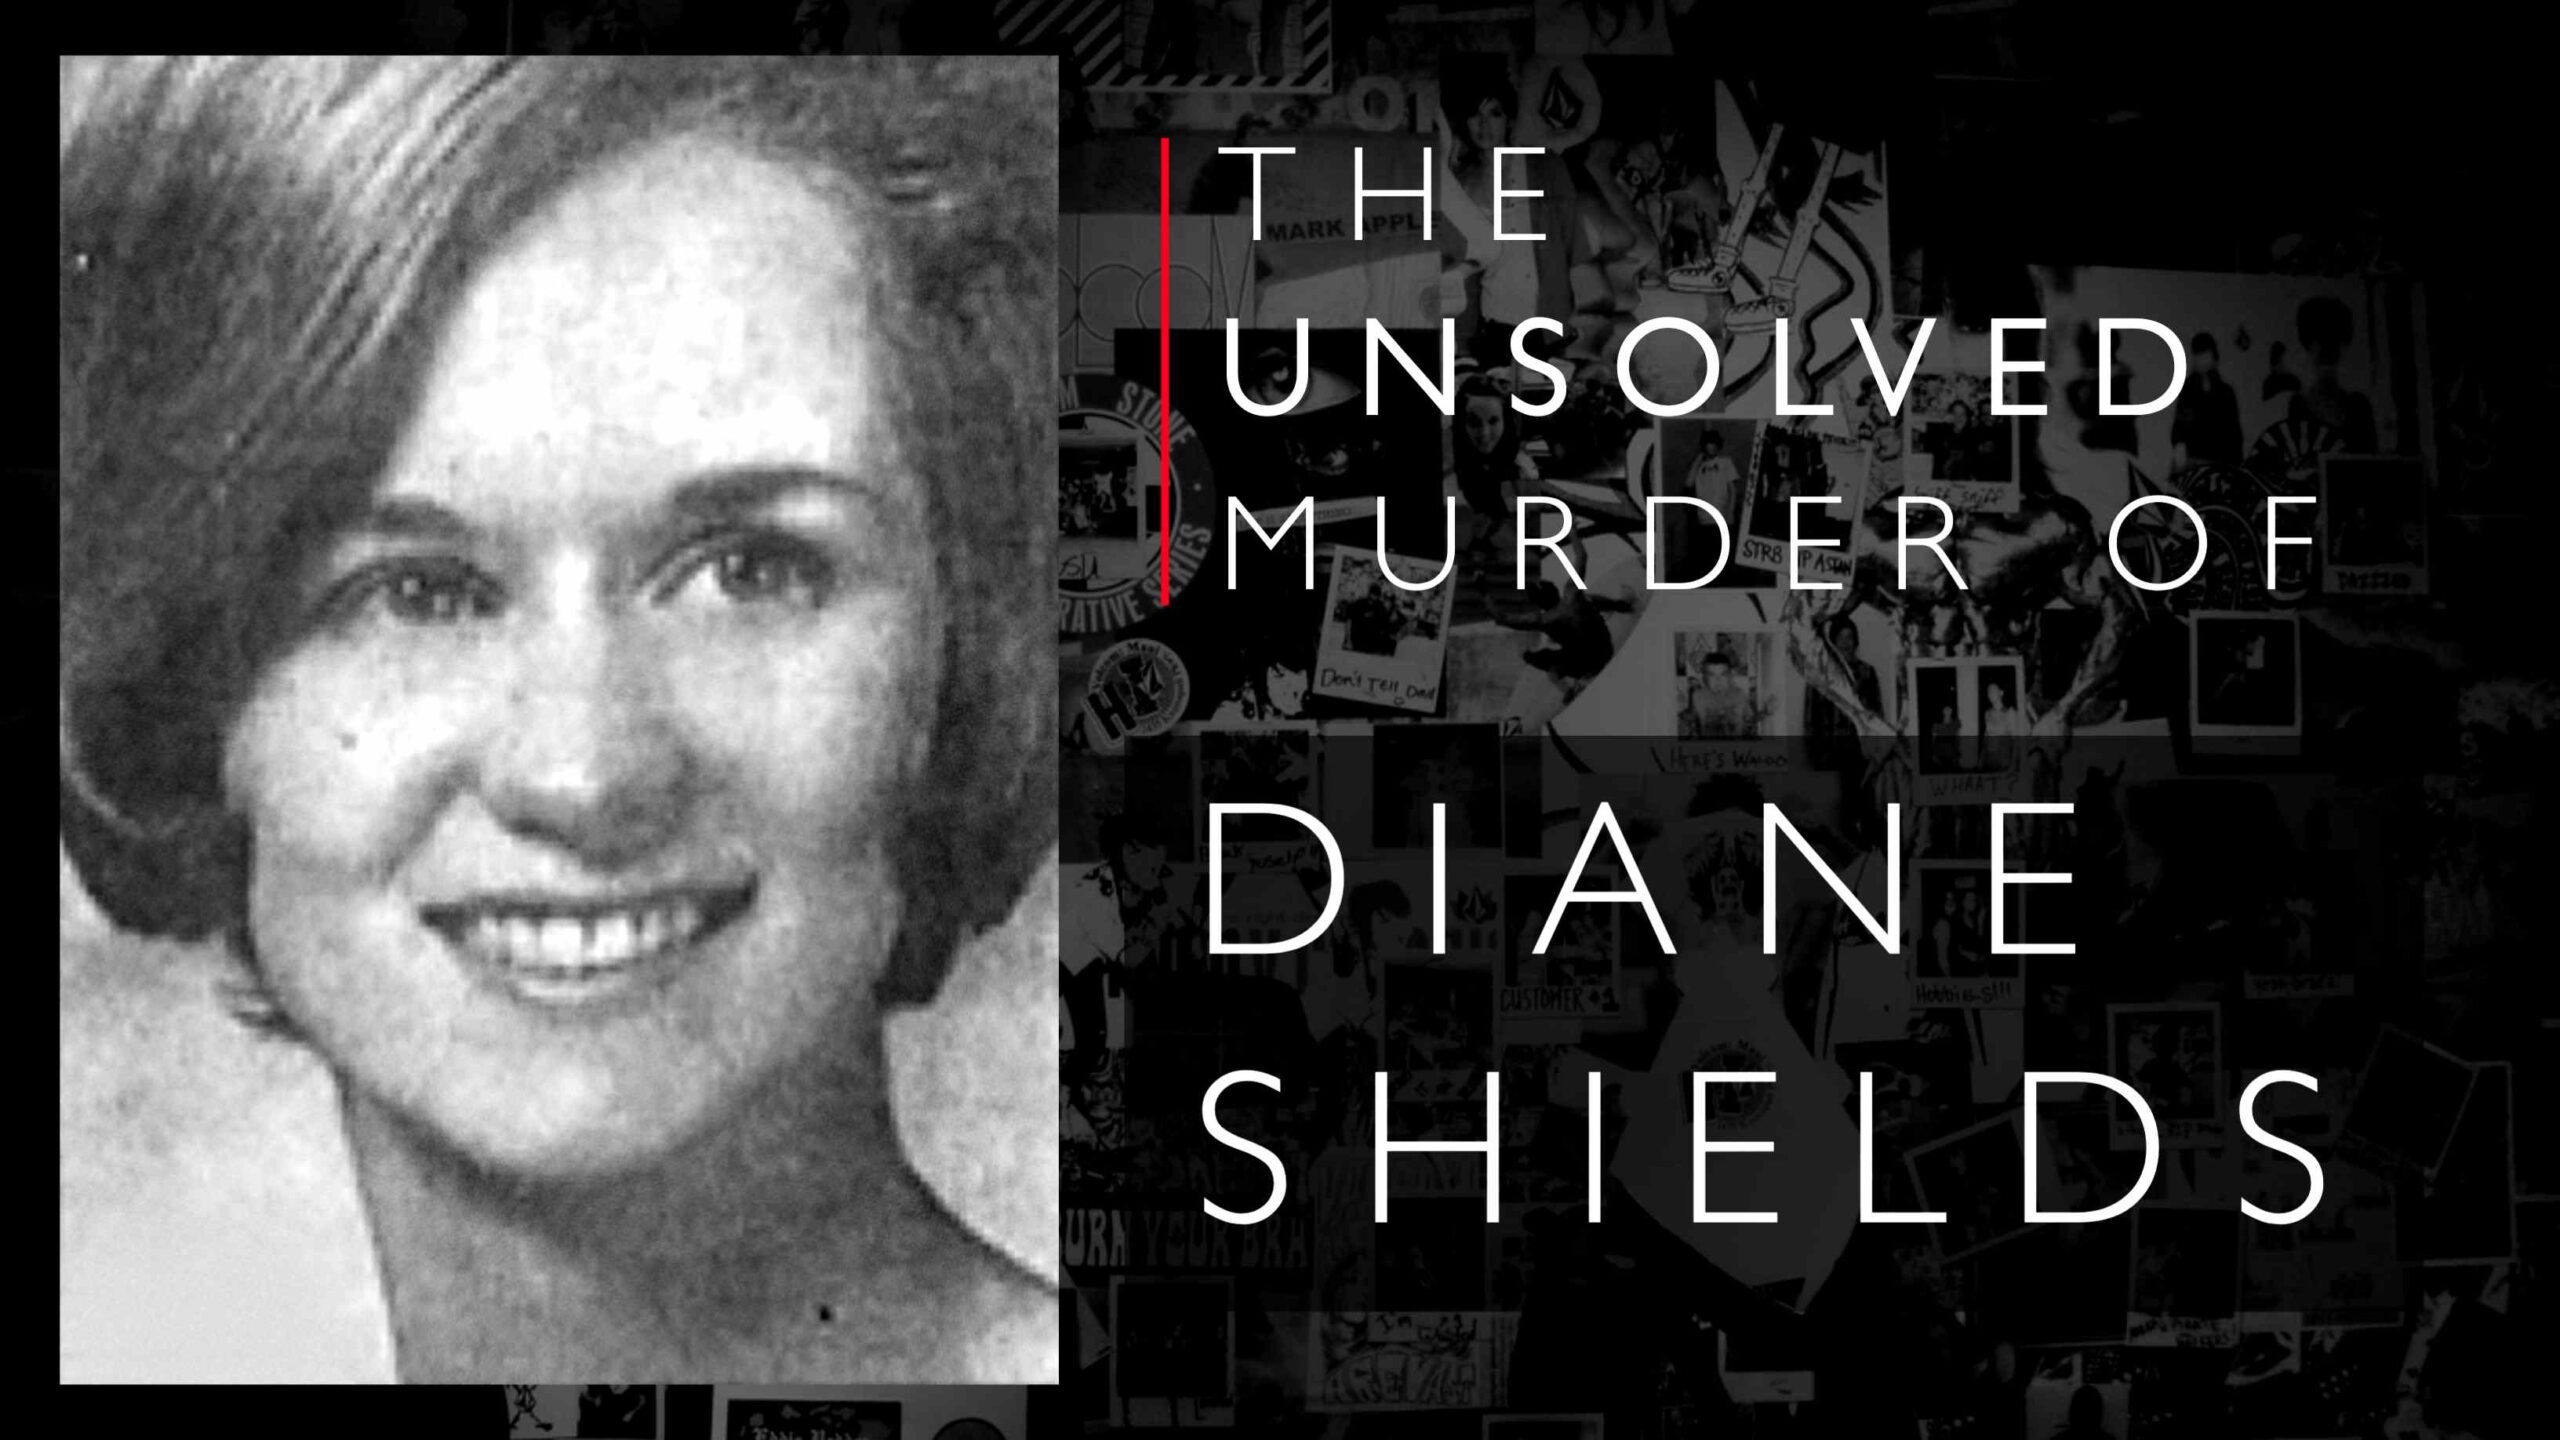 Diane Shields följde på några sätt i Mary Shotwell Little: s fotspår och hittades sedan mördad.